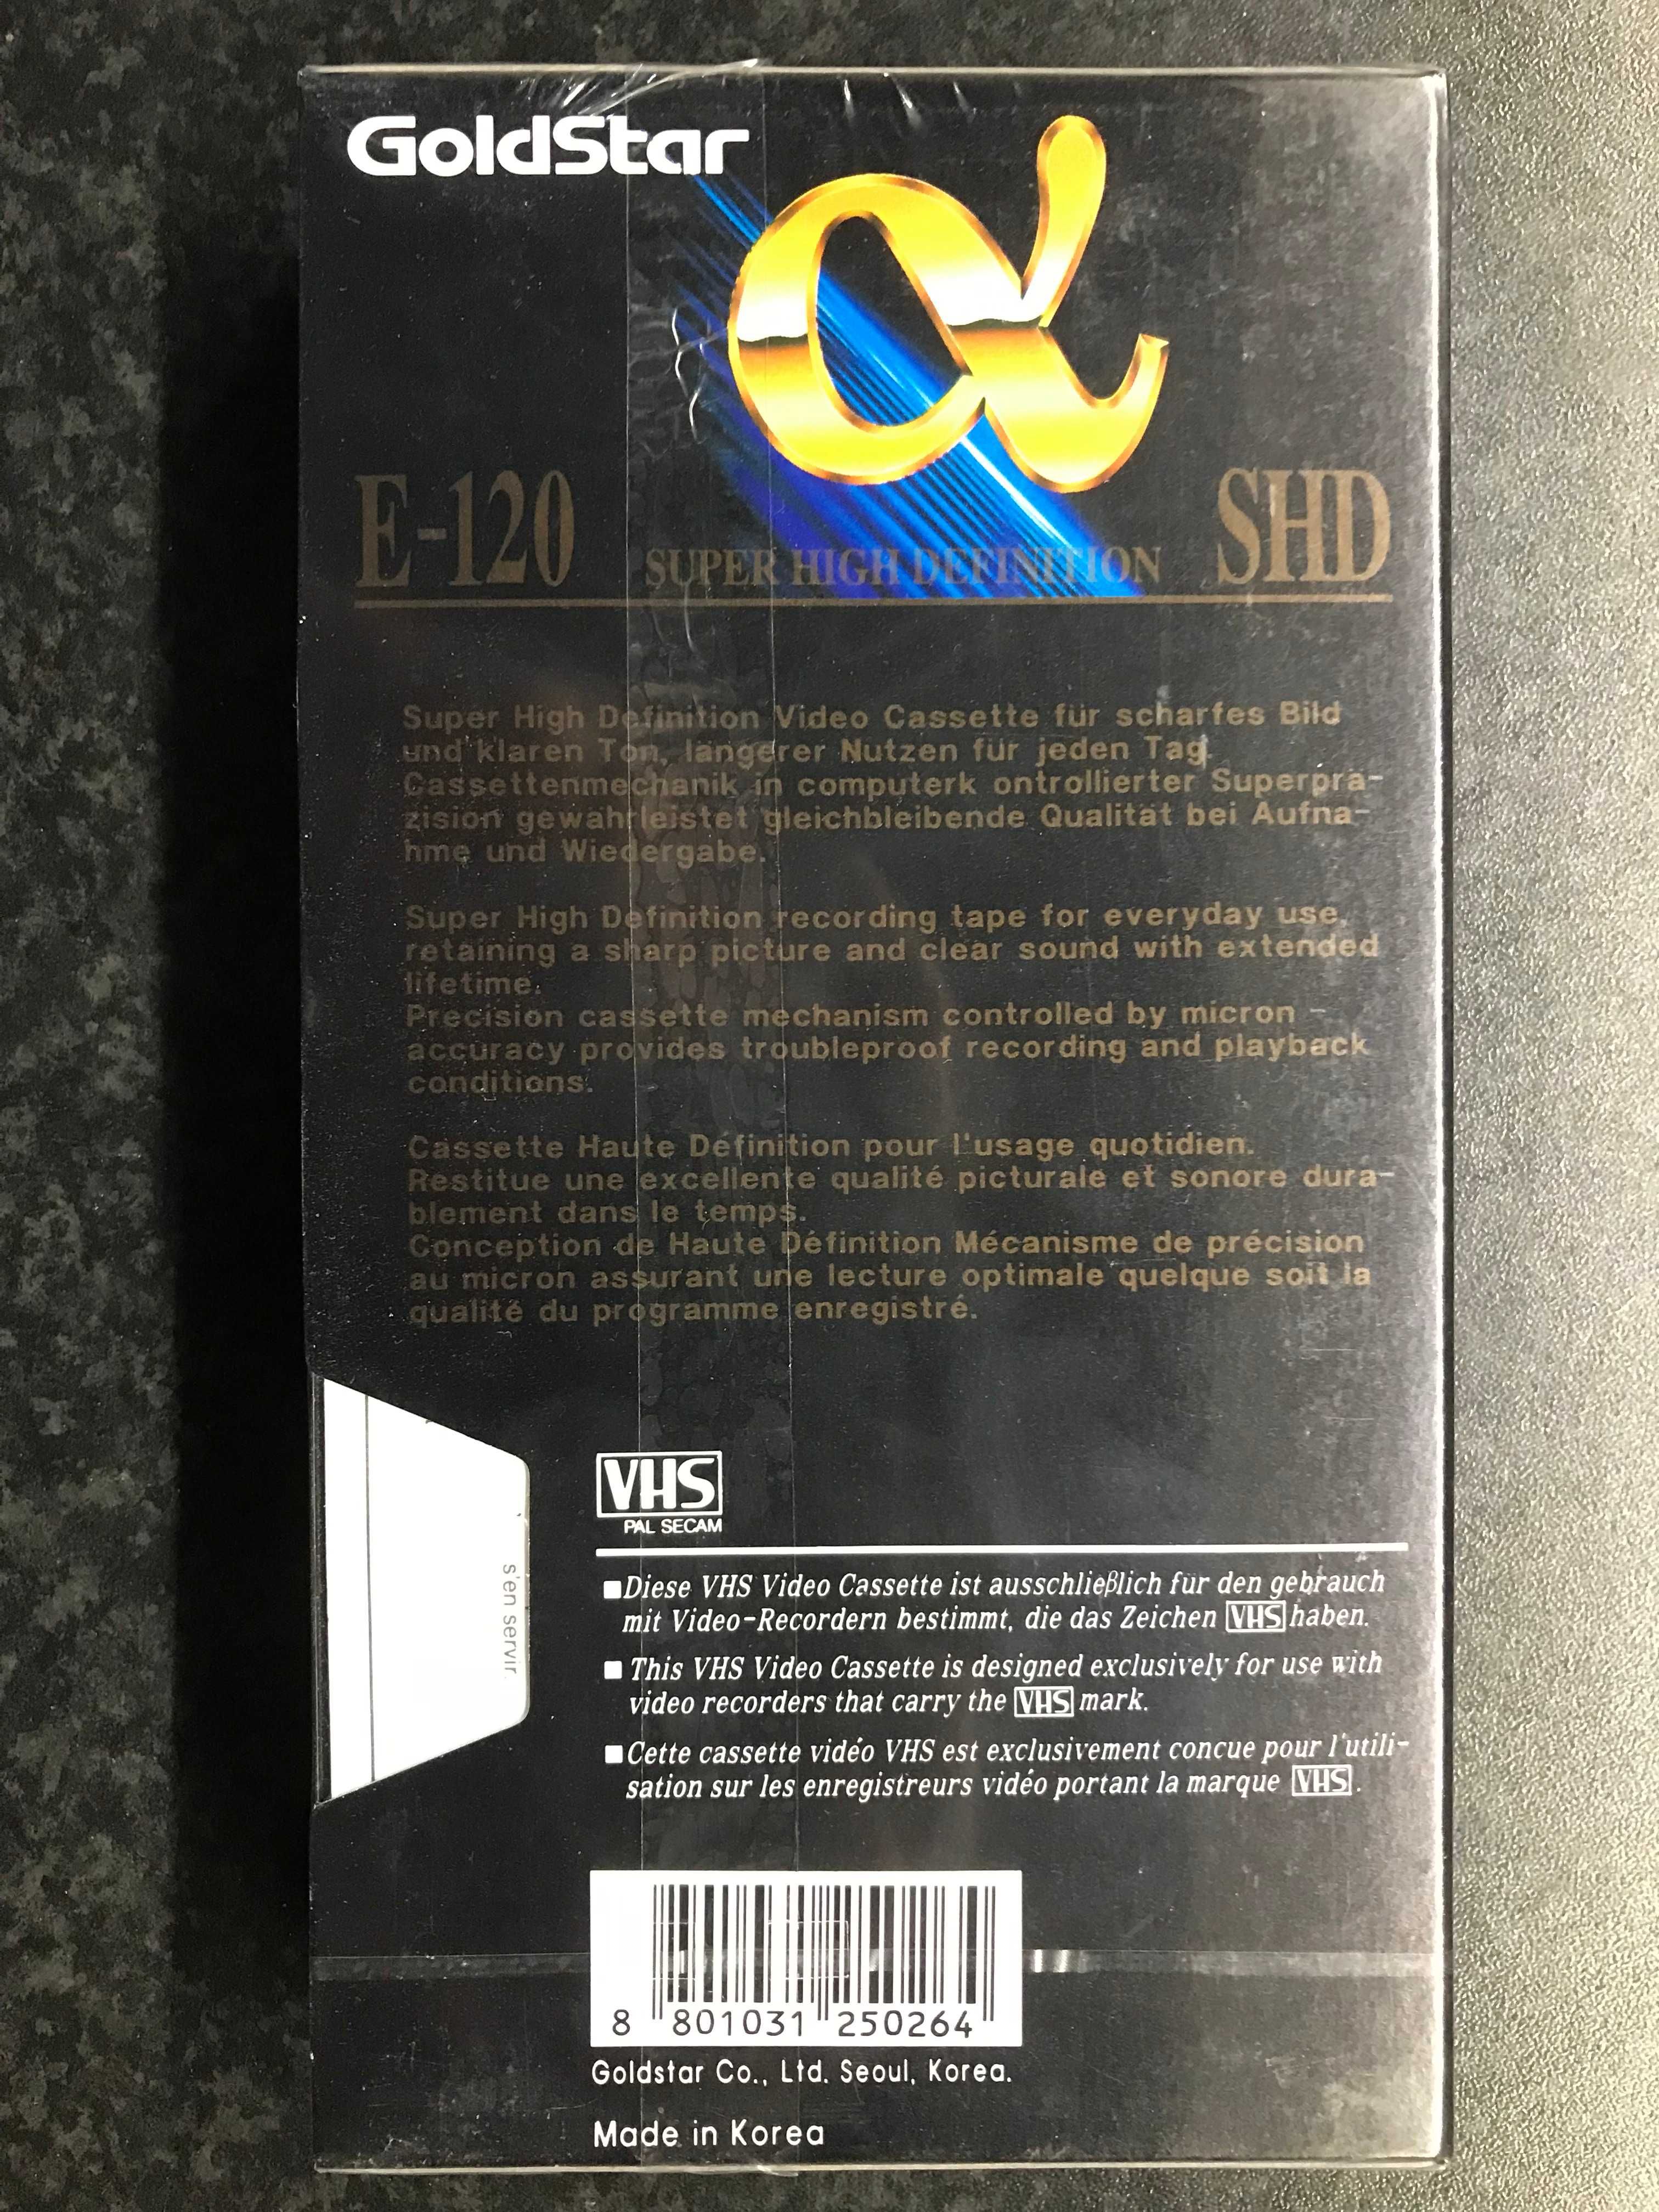 Kaseta VHS LG E 120